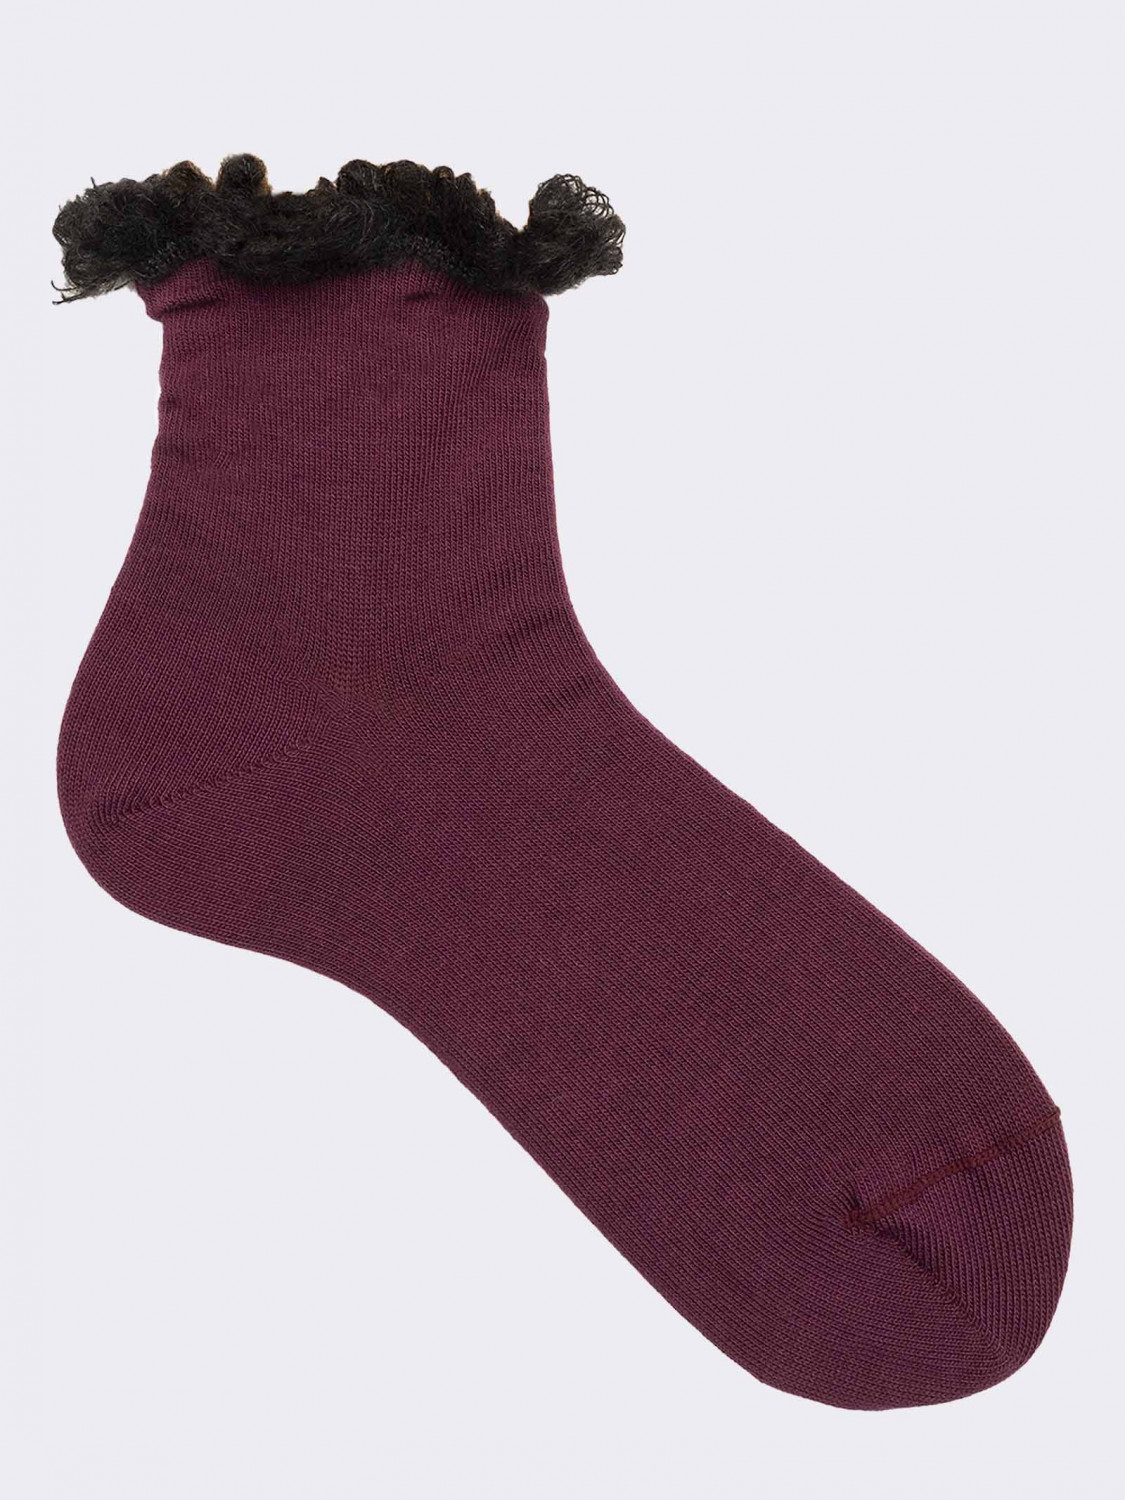 Women's short lace socks in warm cotton